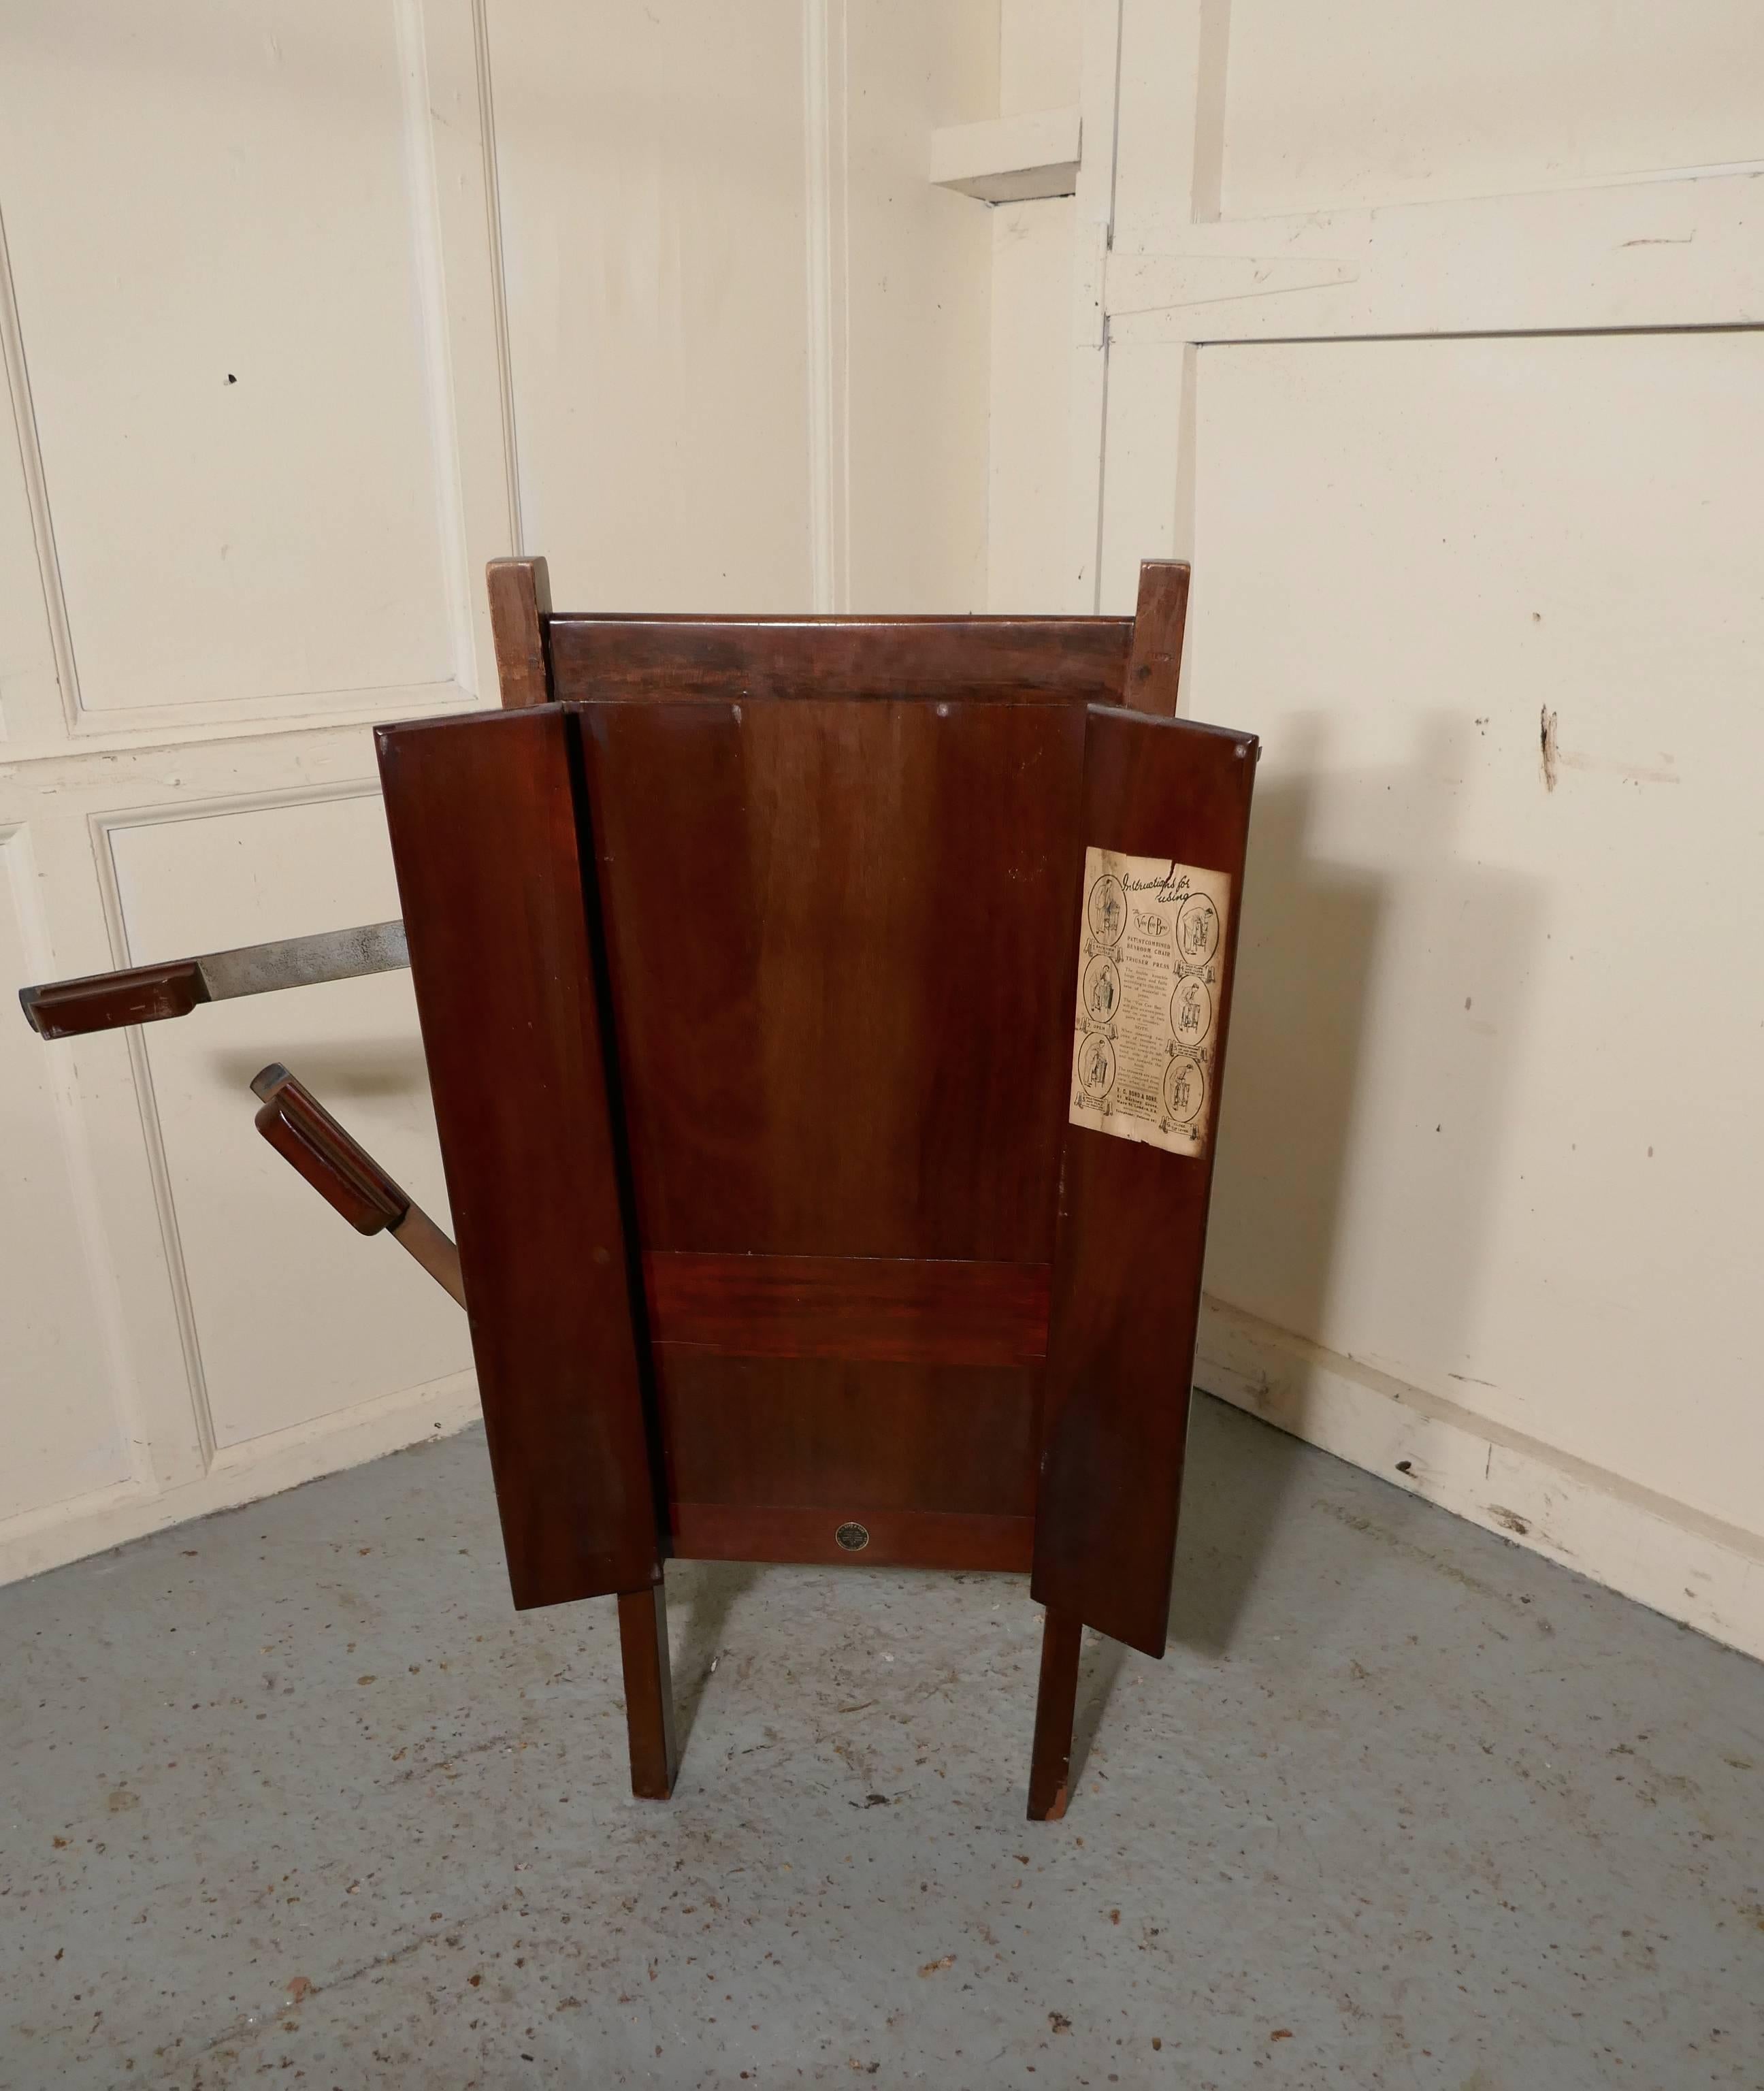 trouser press chair